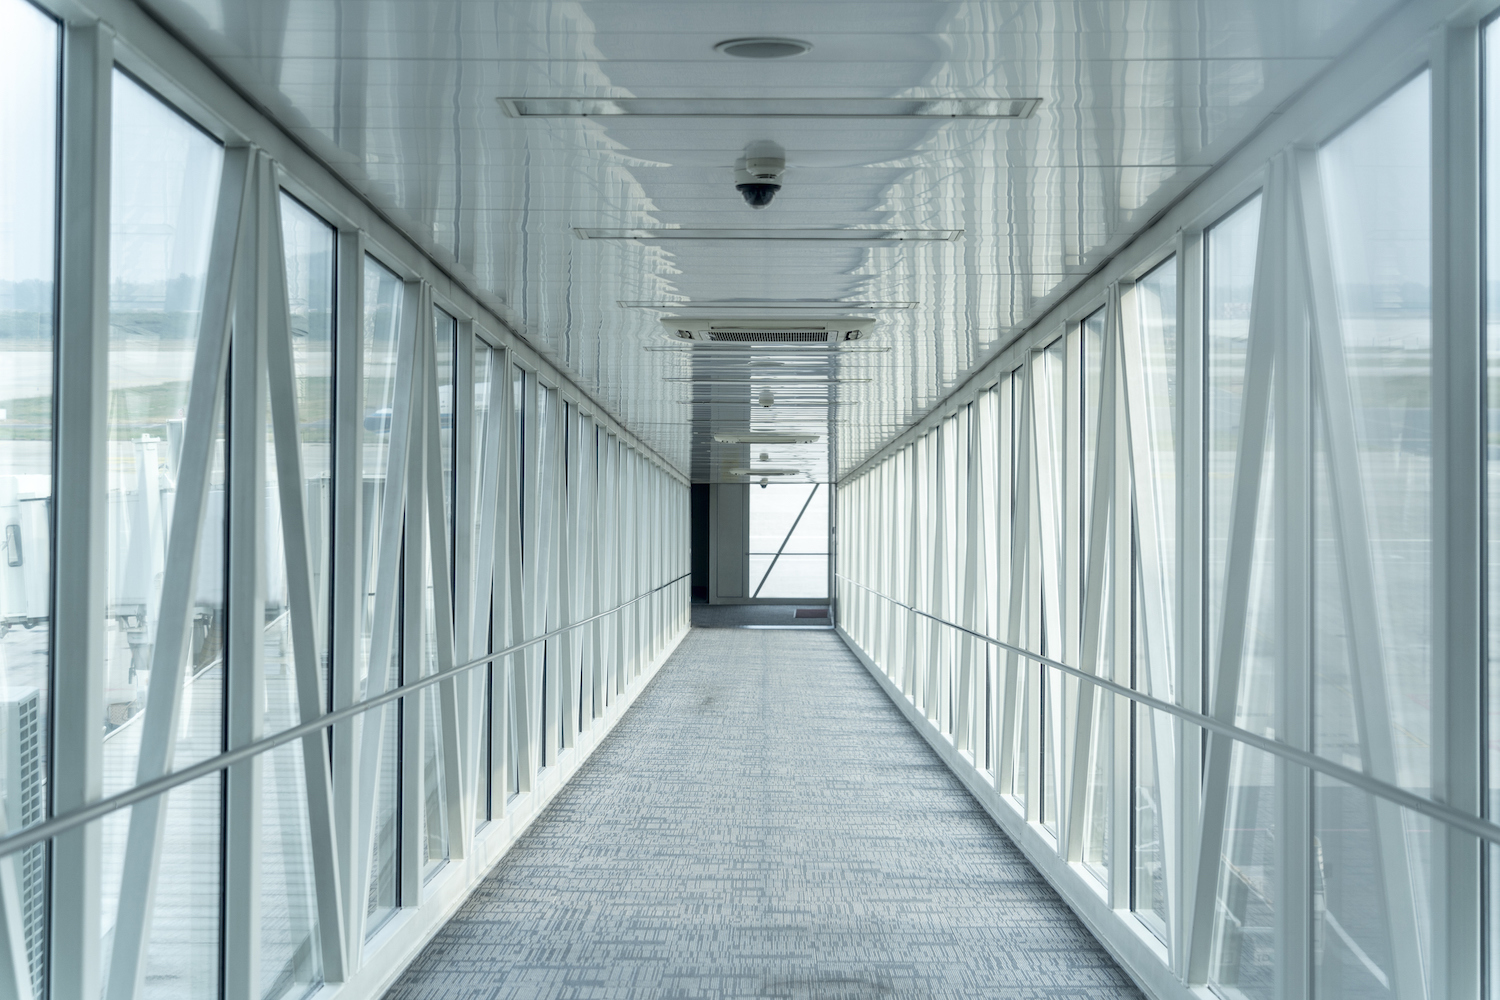 تصویری پرسپکتیو که به راهروی یک جت وی در فرودگاه نگاه می کند